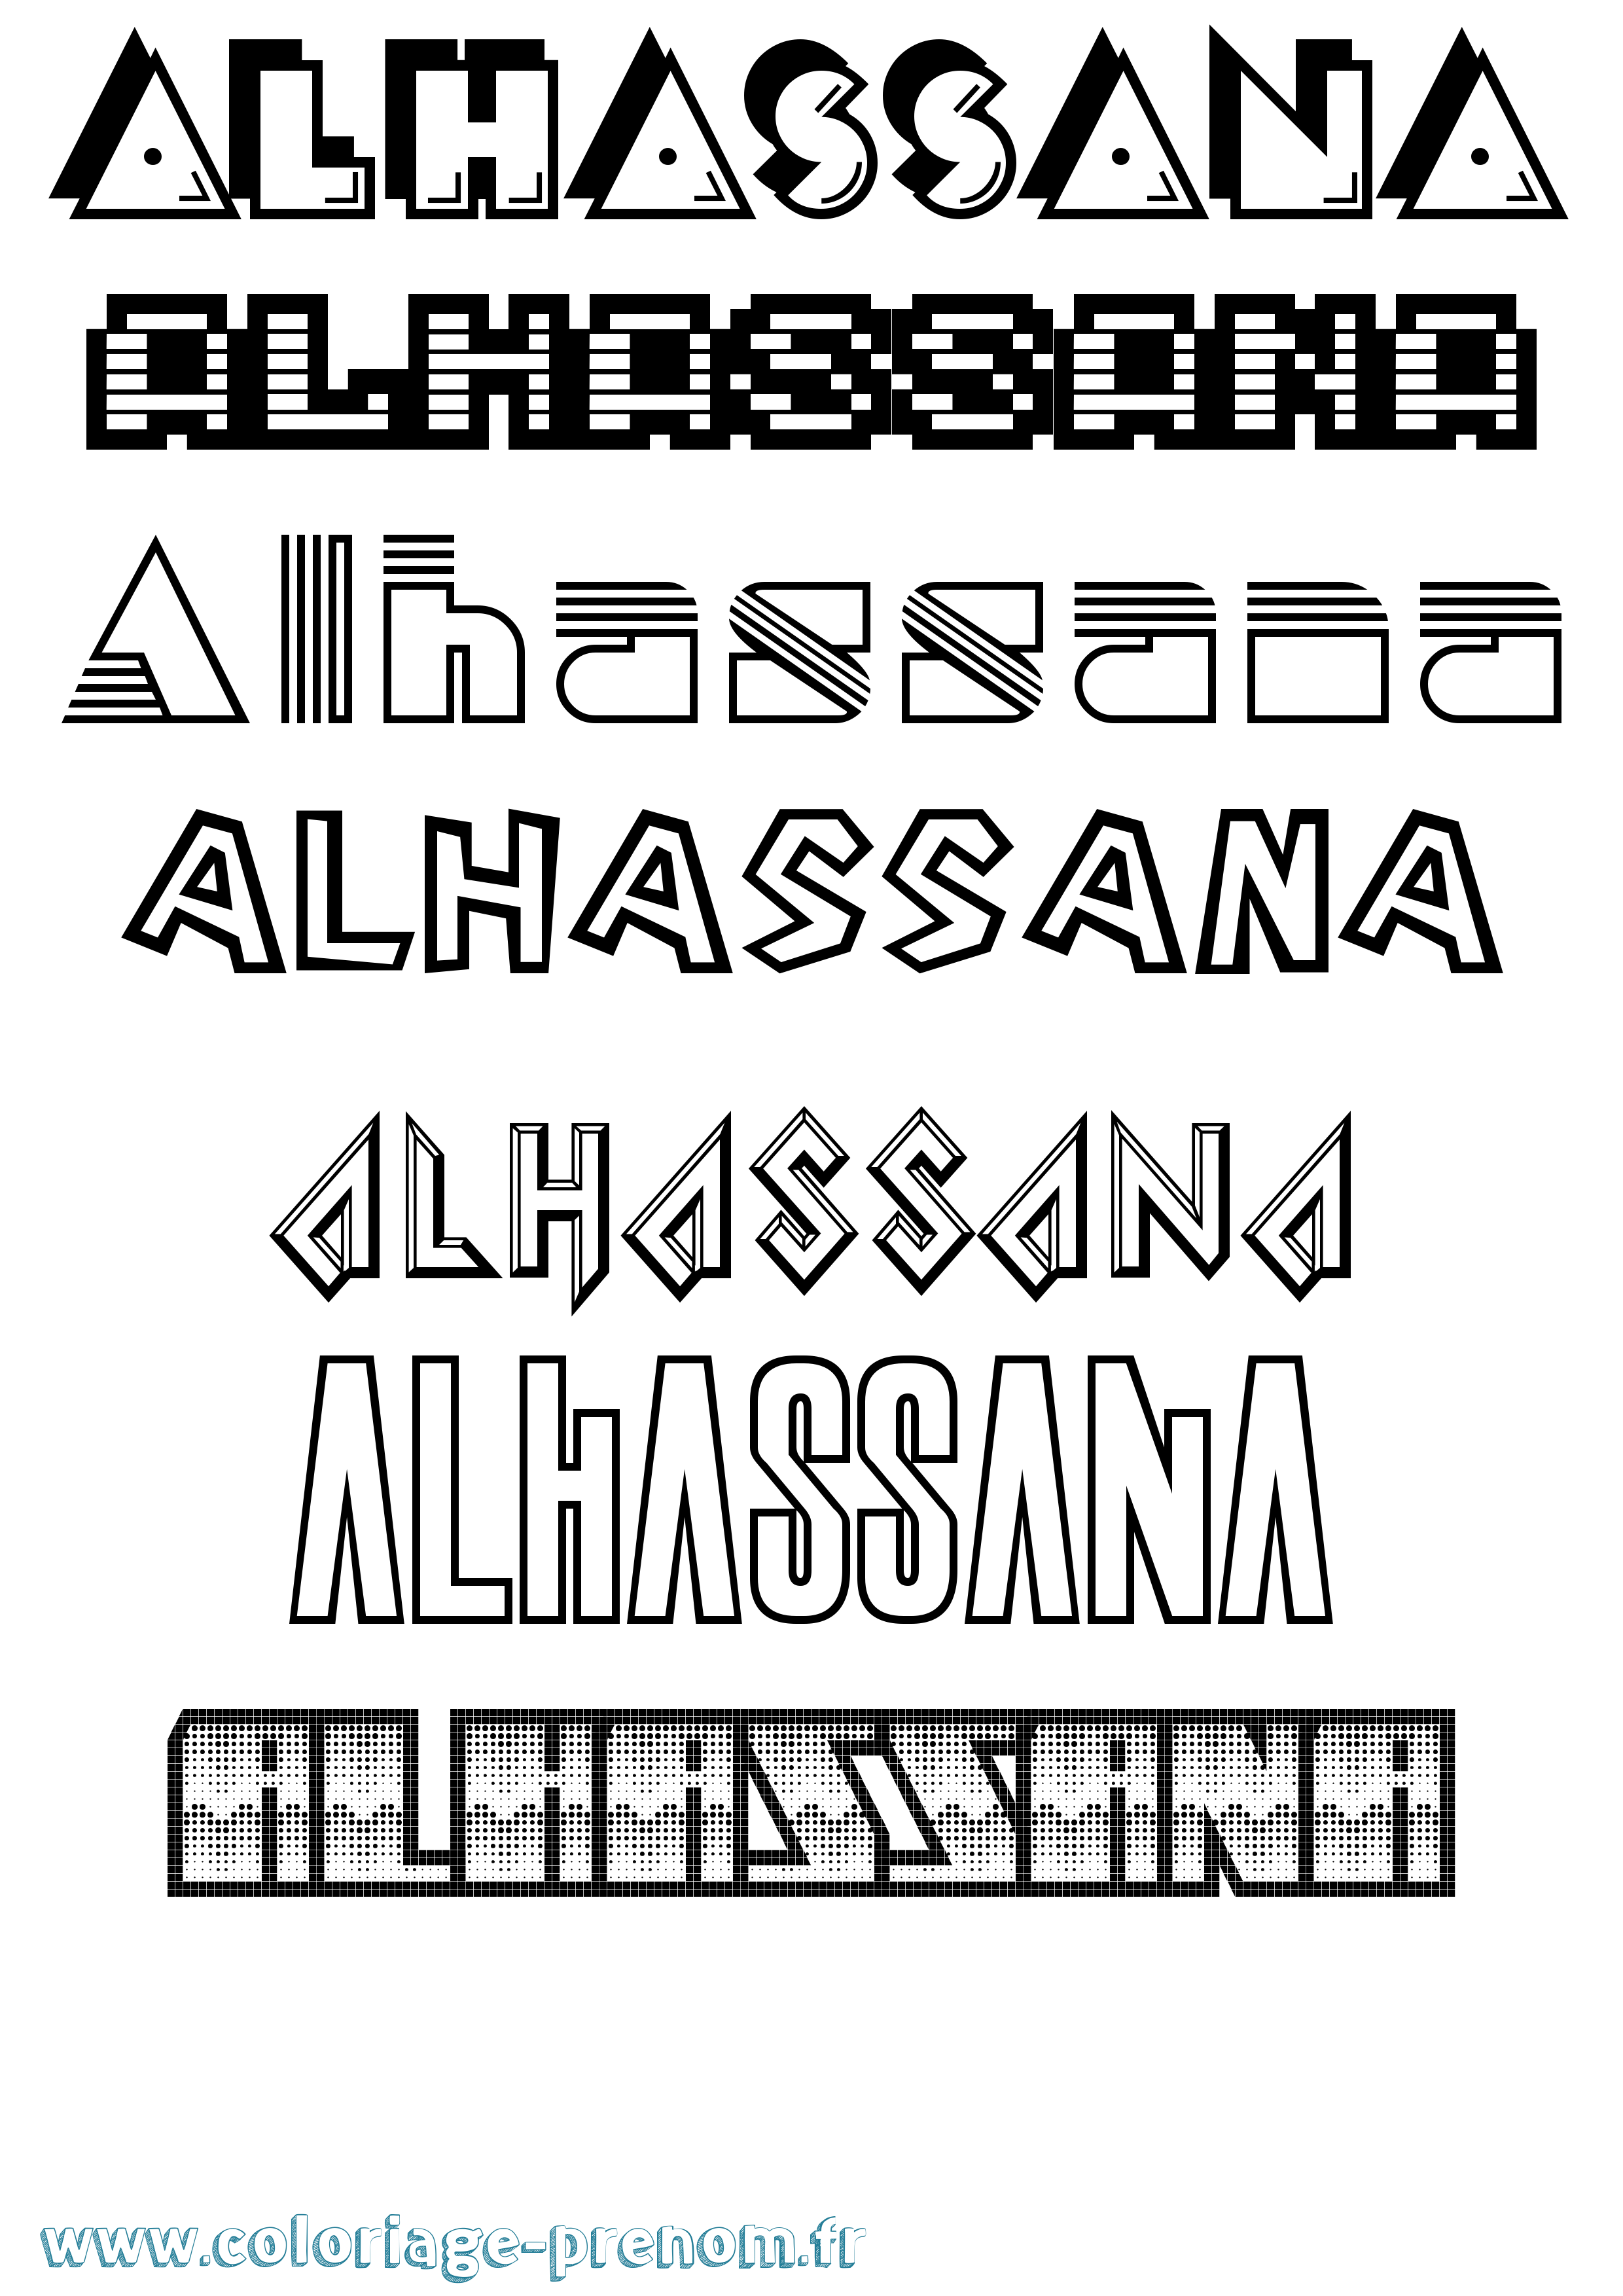 Coloriage prénom Alhassana Jeux Vidéos